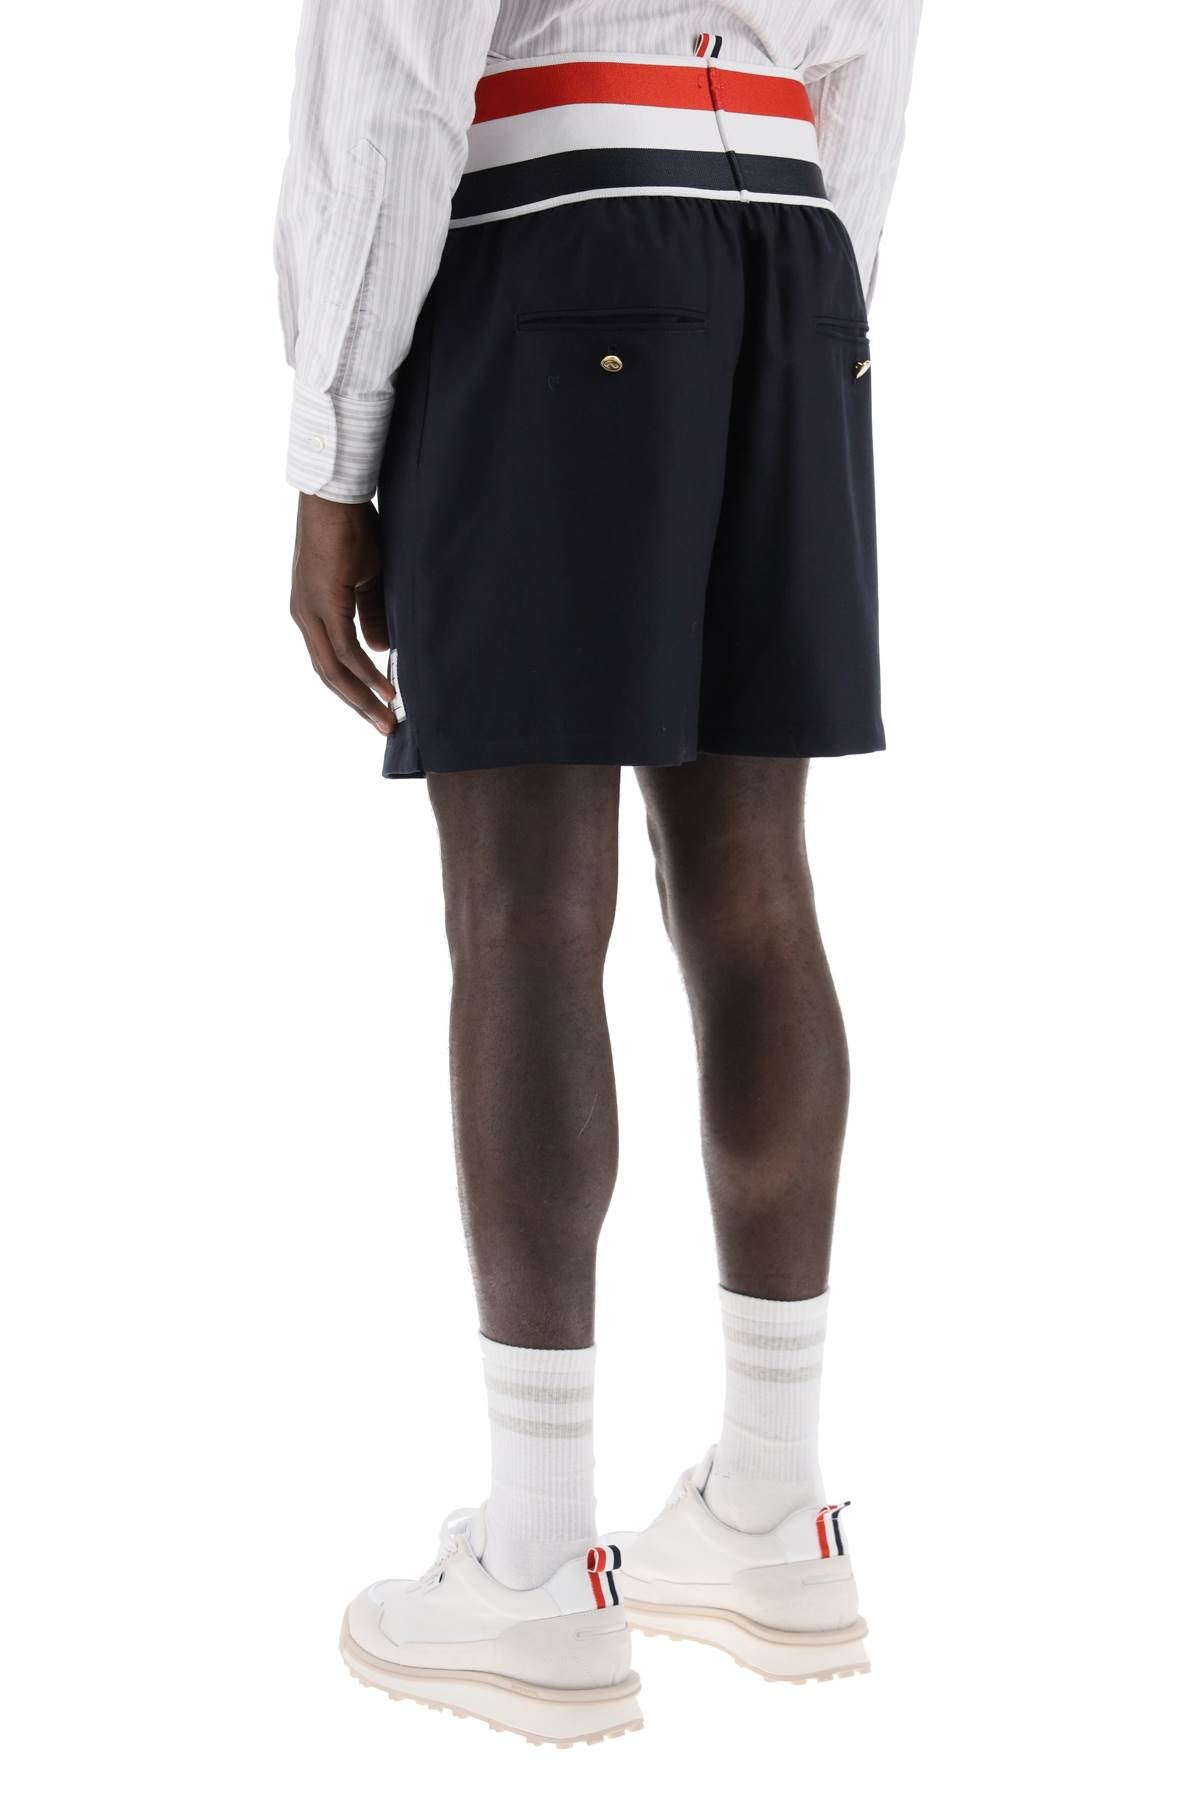 Thom browne elastic waistband bermuda shorts-2